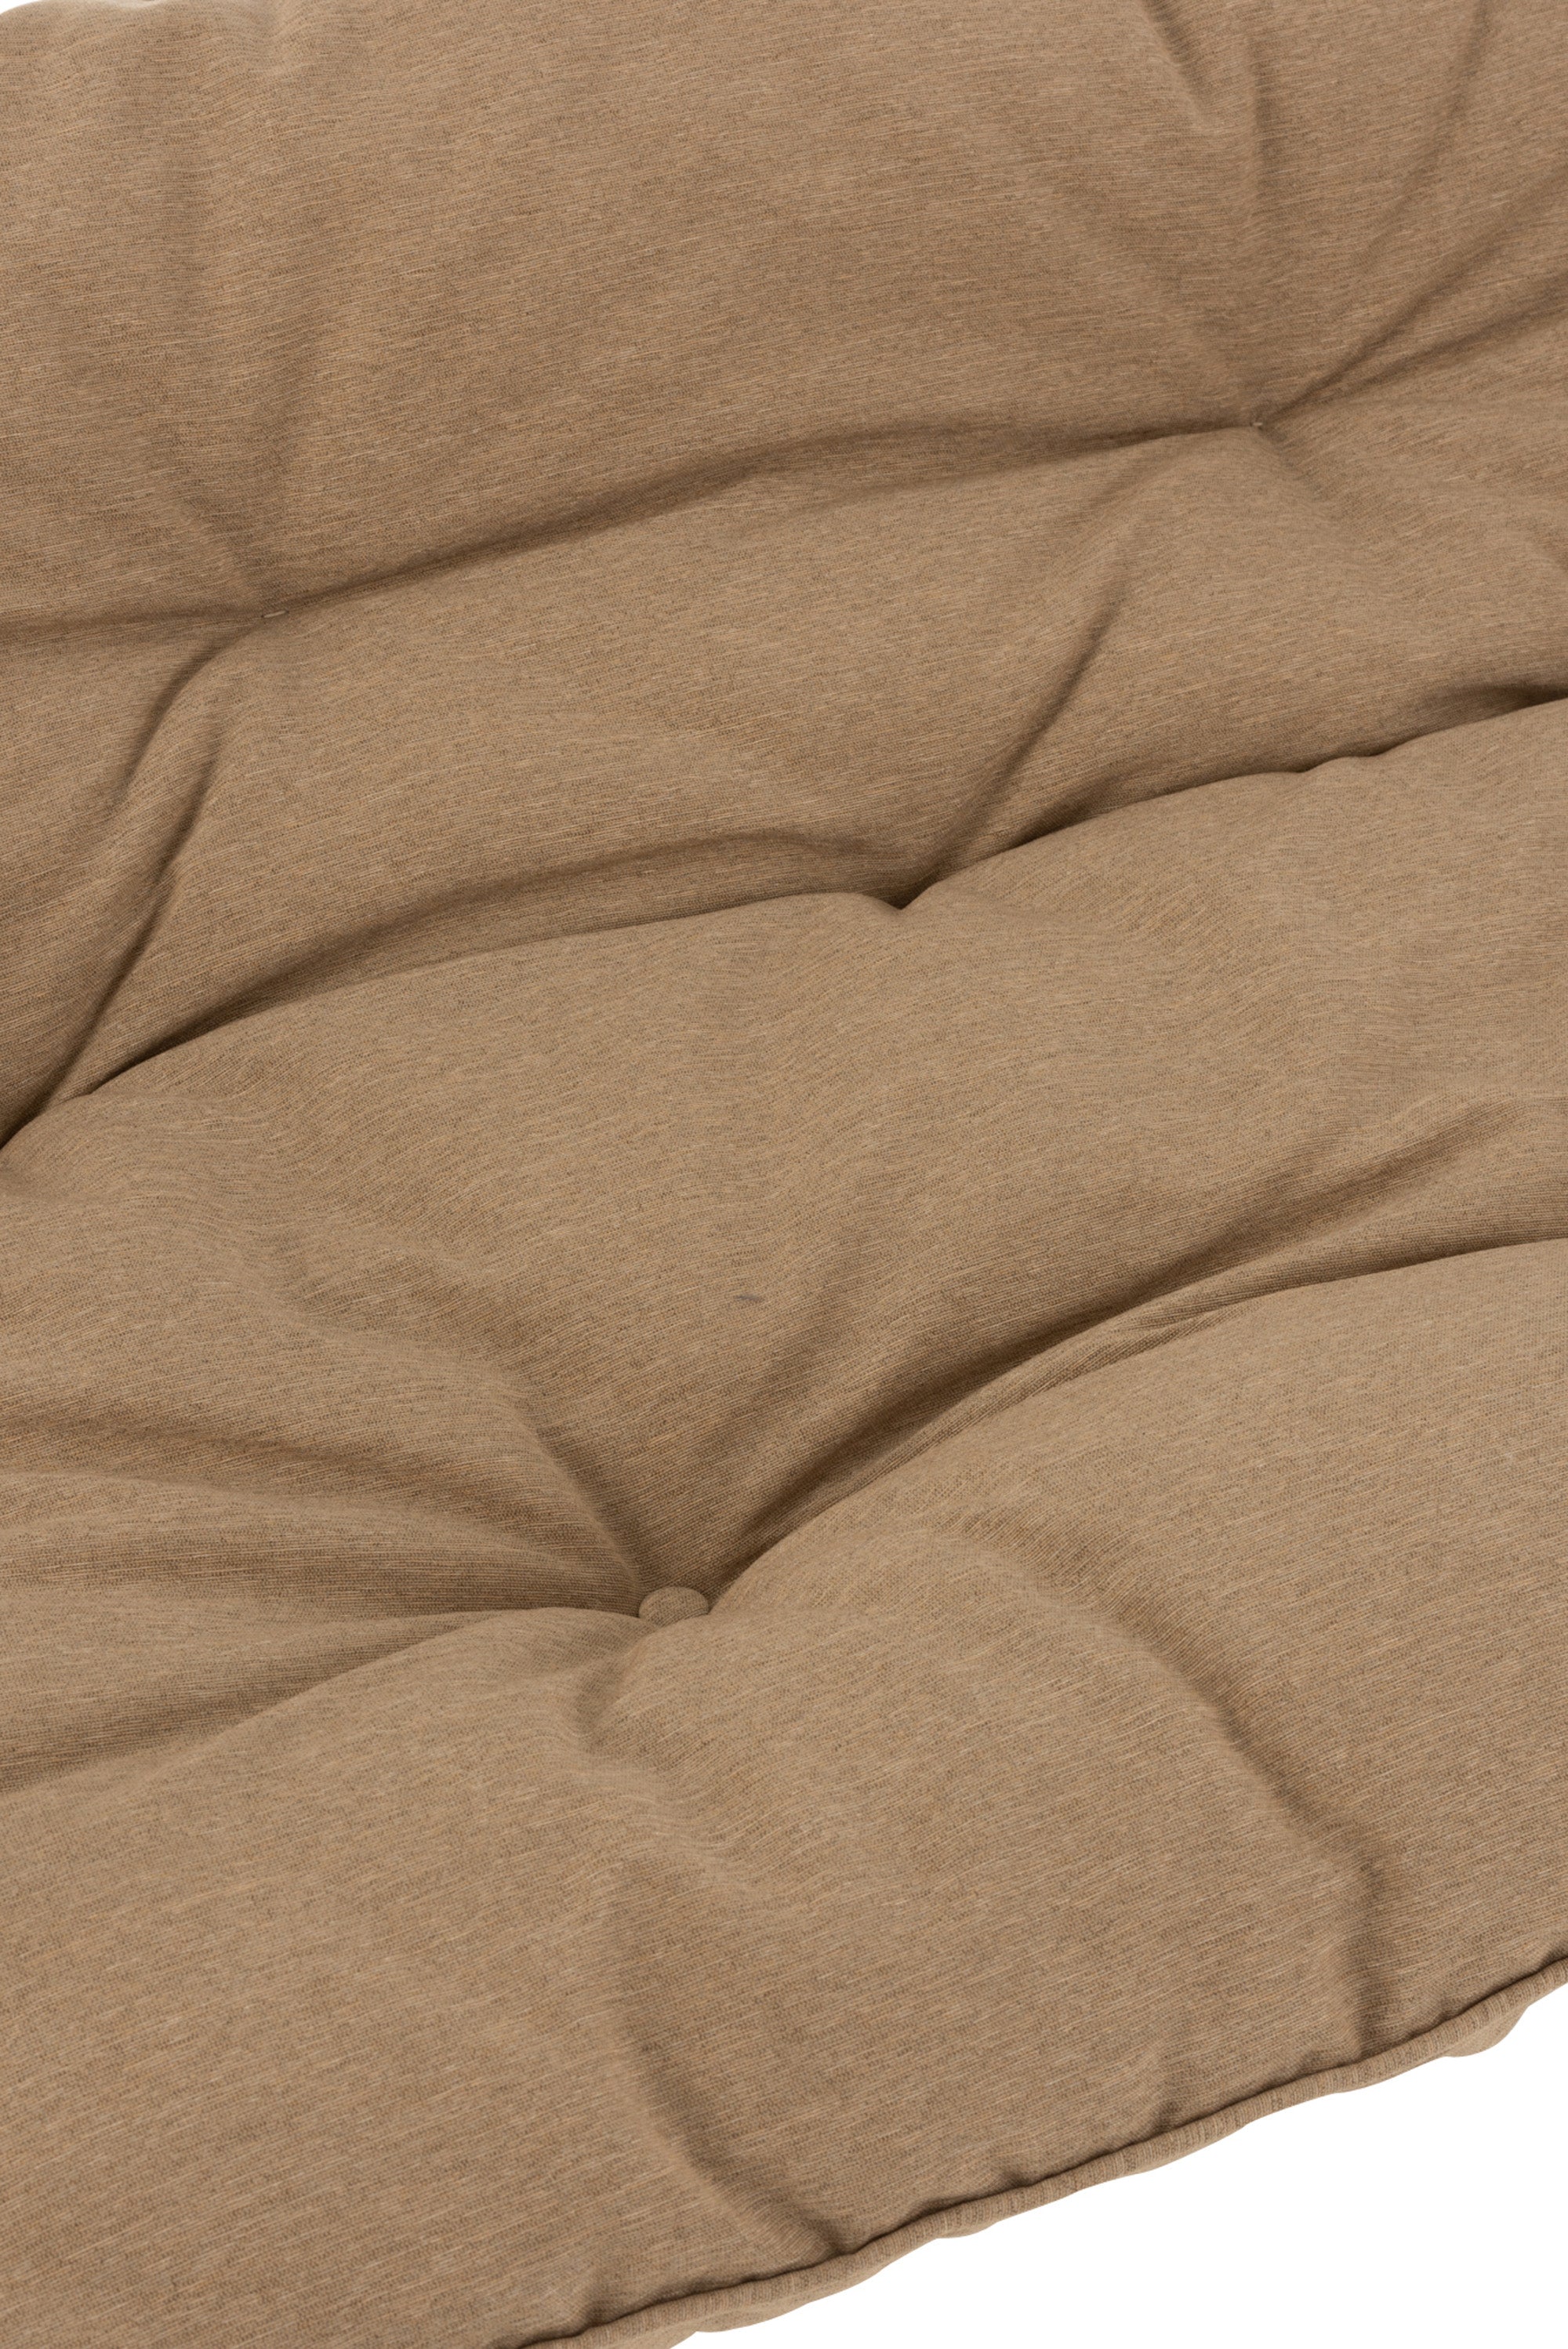 Sehr schickes Sofa für 2 Personen, Material: Eisen, Polyester, Baumwolle, beige/dunkelbraun